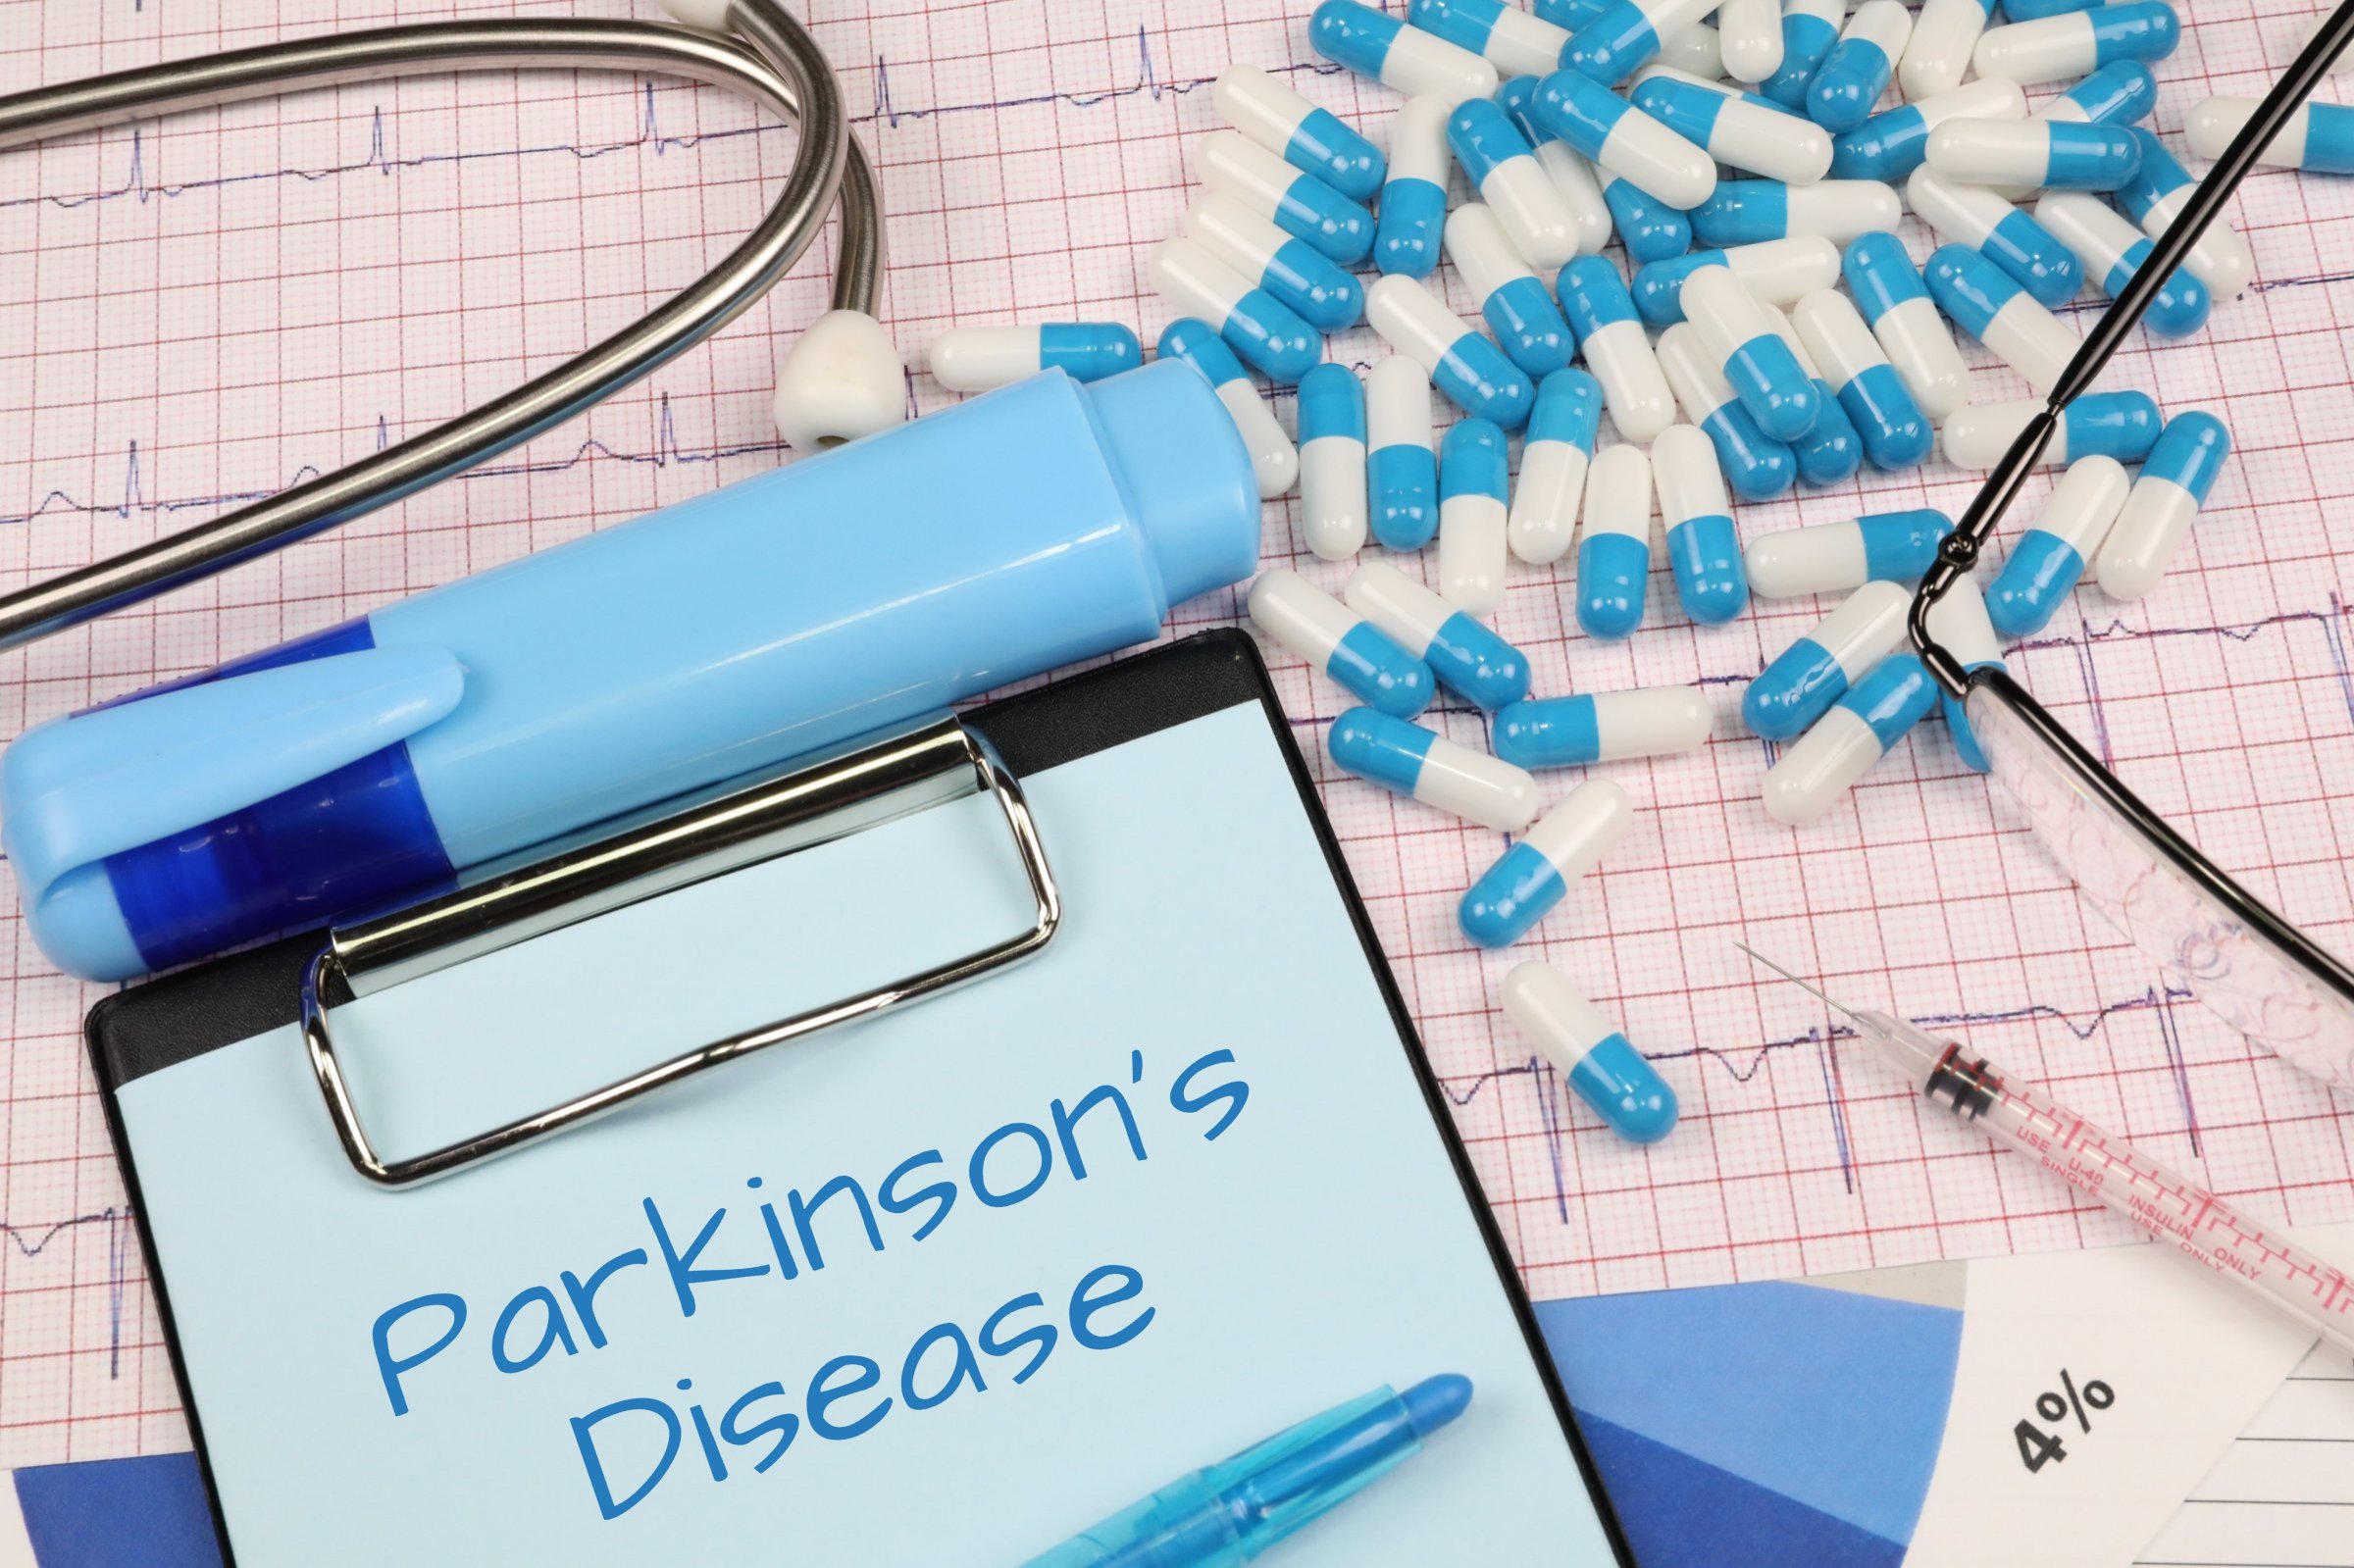 parkinsons disease